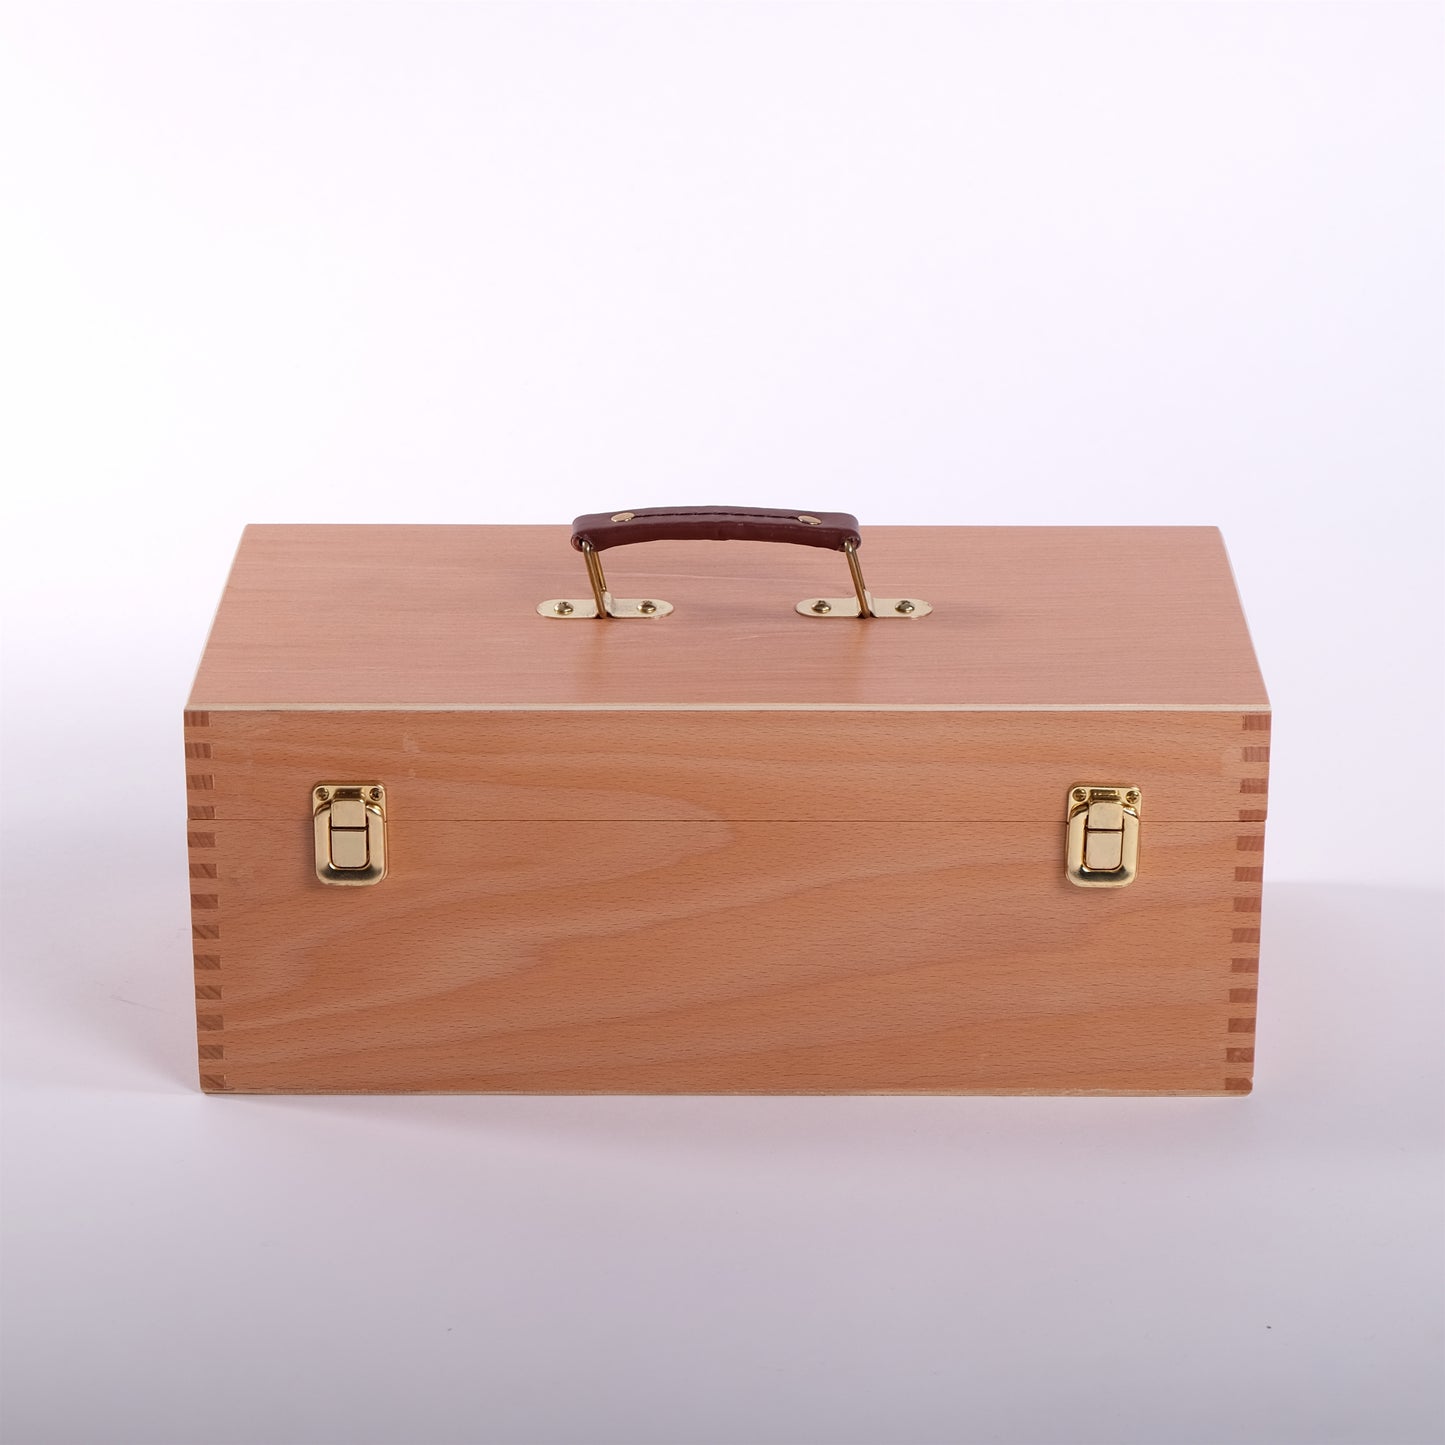 Pinselkasten aus Holz | 40x20x15 cm, Buche | Künstlerbox für Pinsel